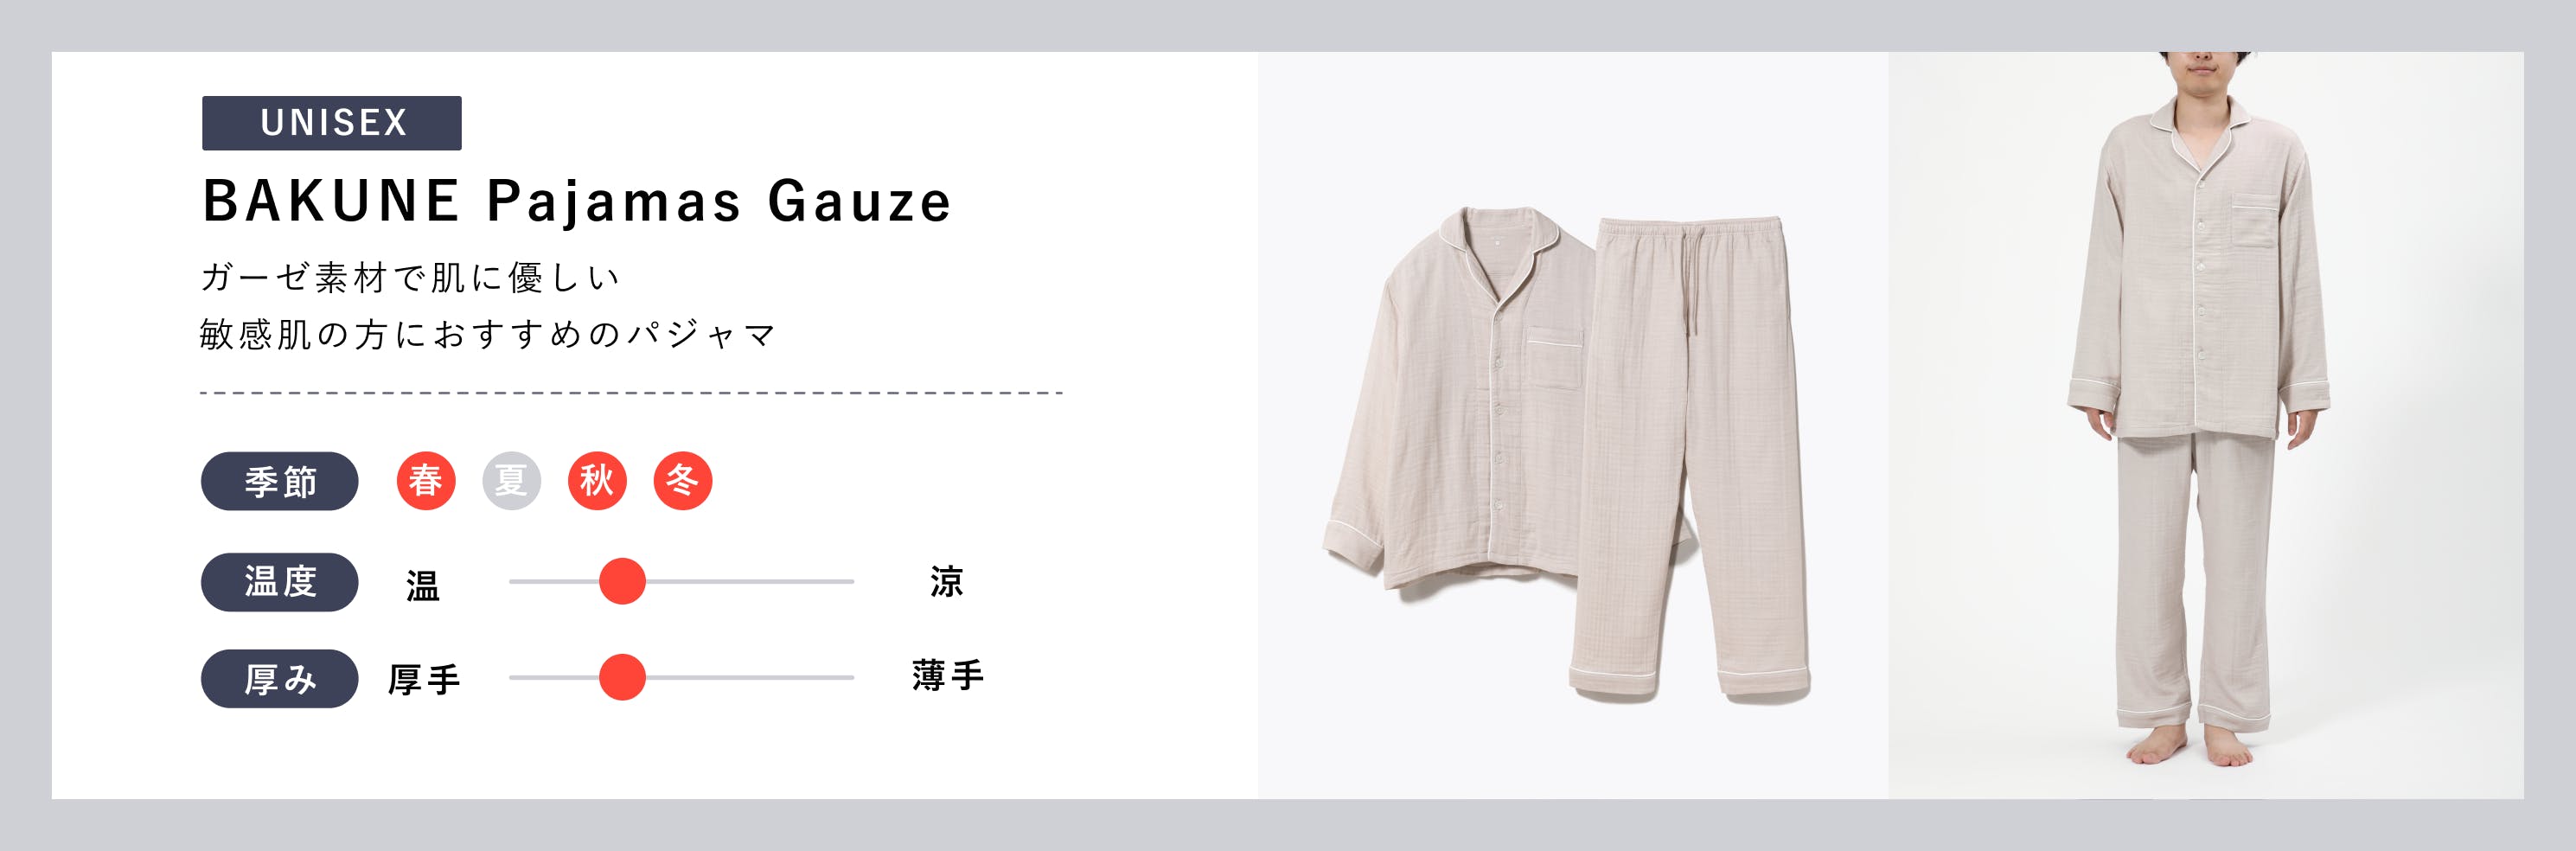 UNISEX【BAKUNE Pajamas Gauze】ガーゼ素材に肌に優しい敏感肌の方におすすめのパジャマ